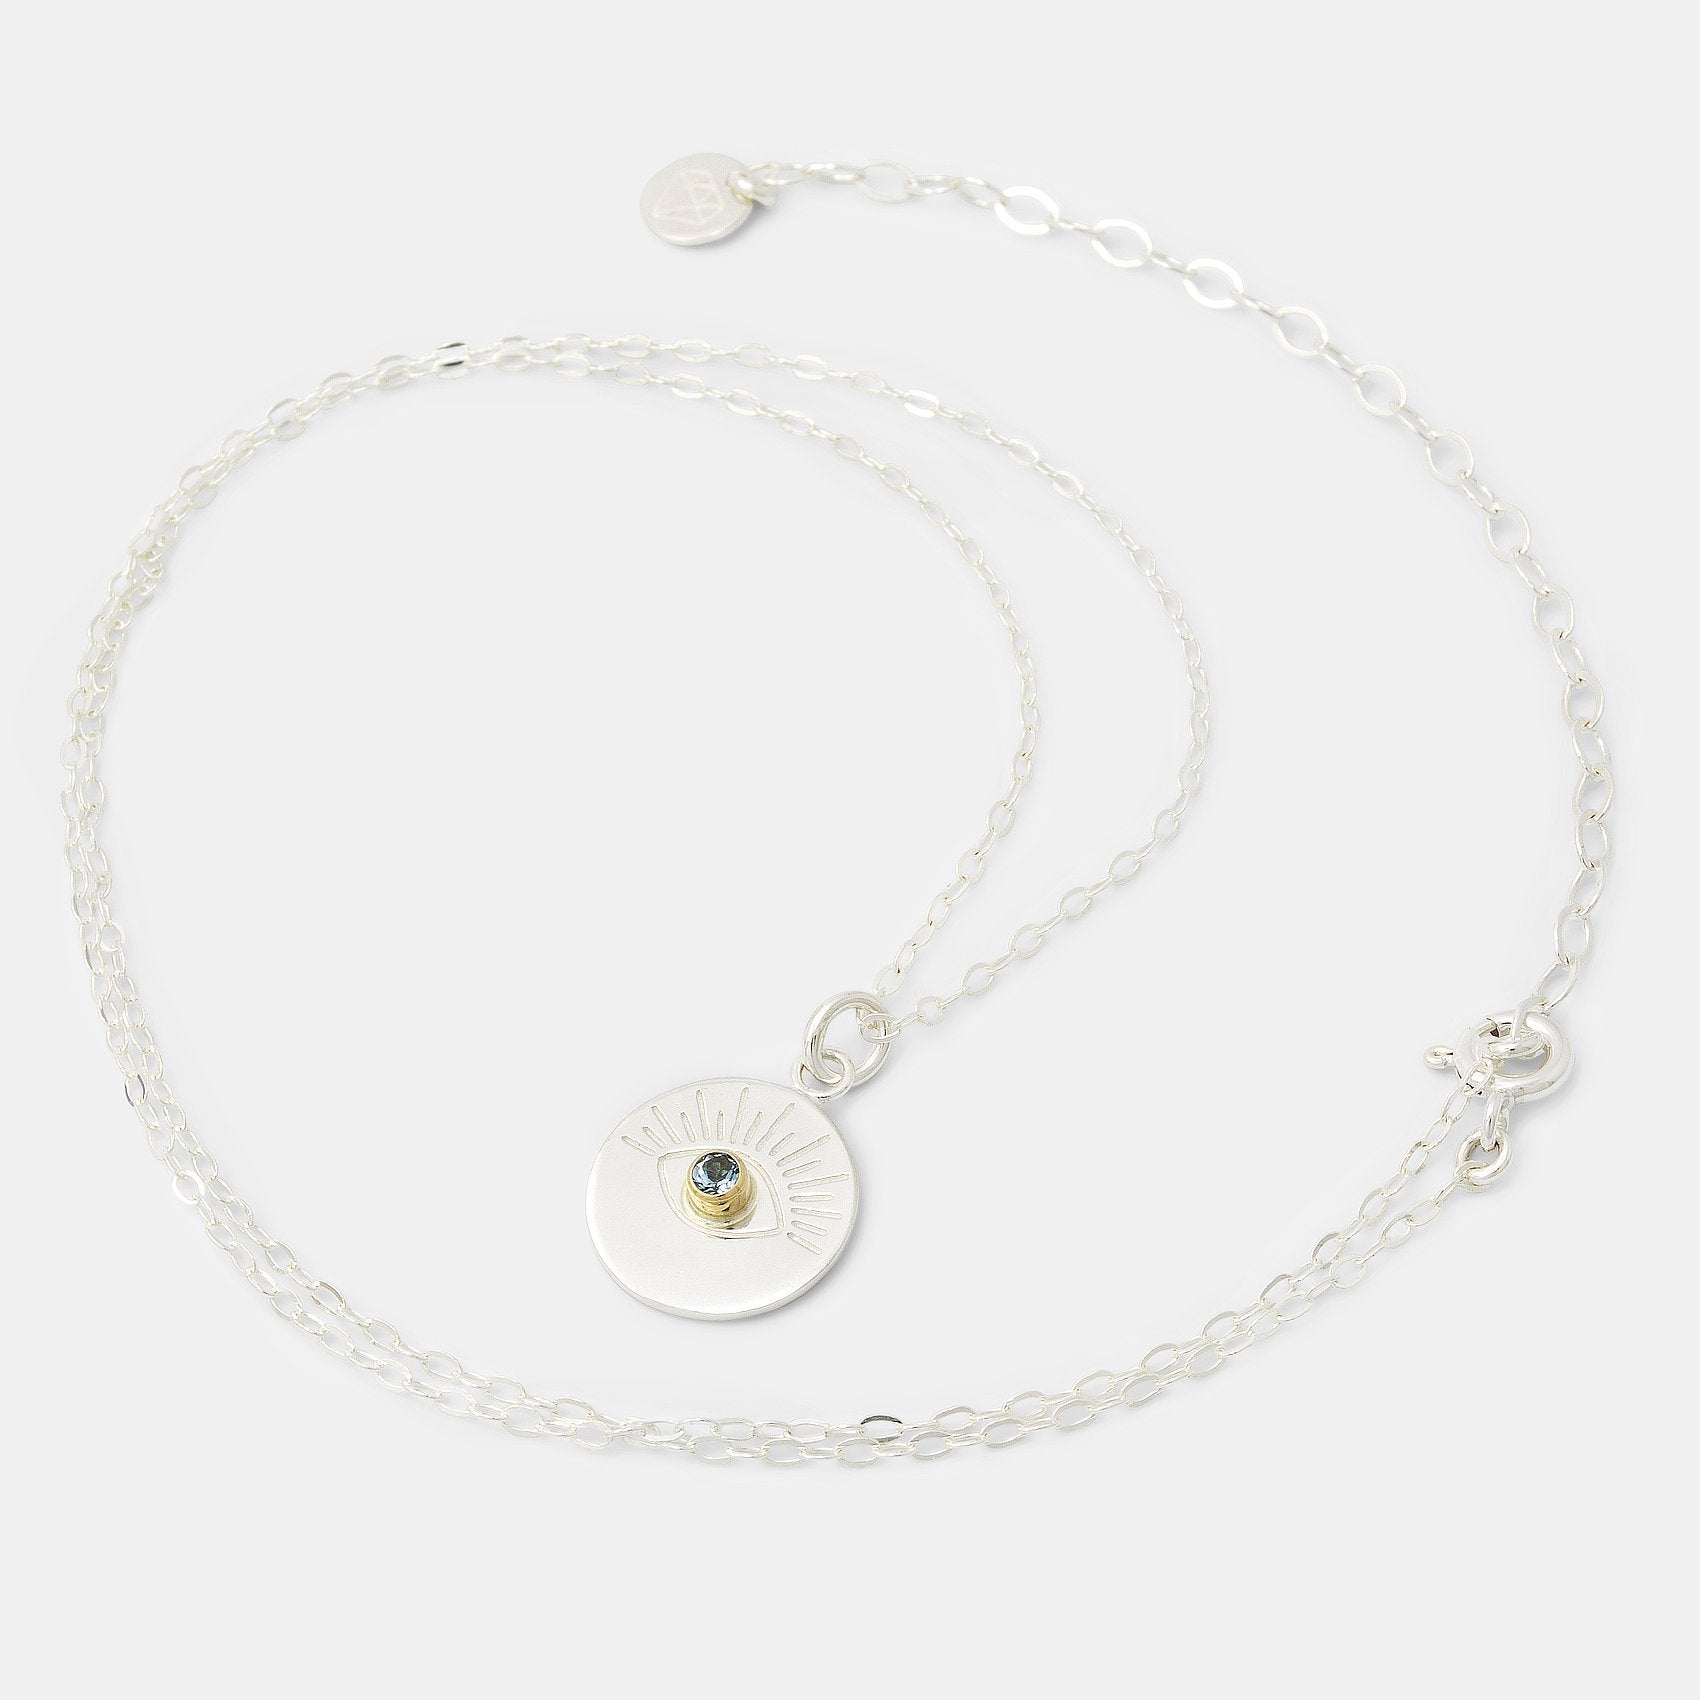 Eye & aquamarine amulet necklace - Simone Walsh Jewellery Australia